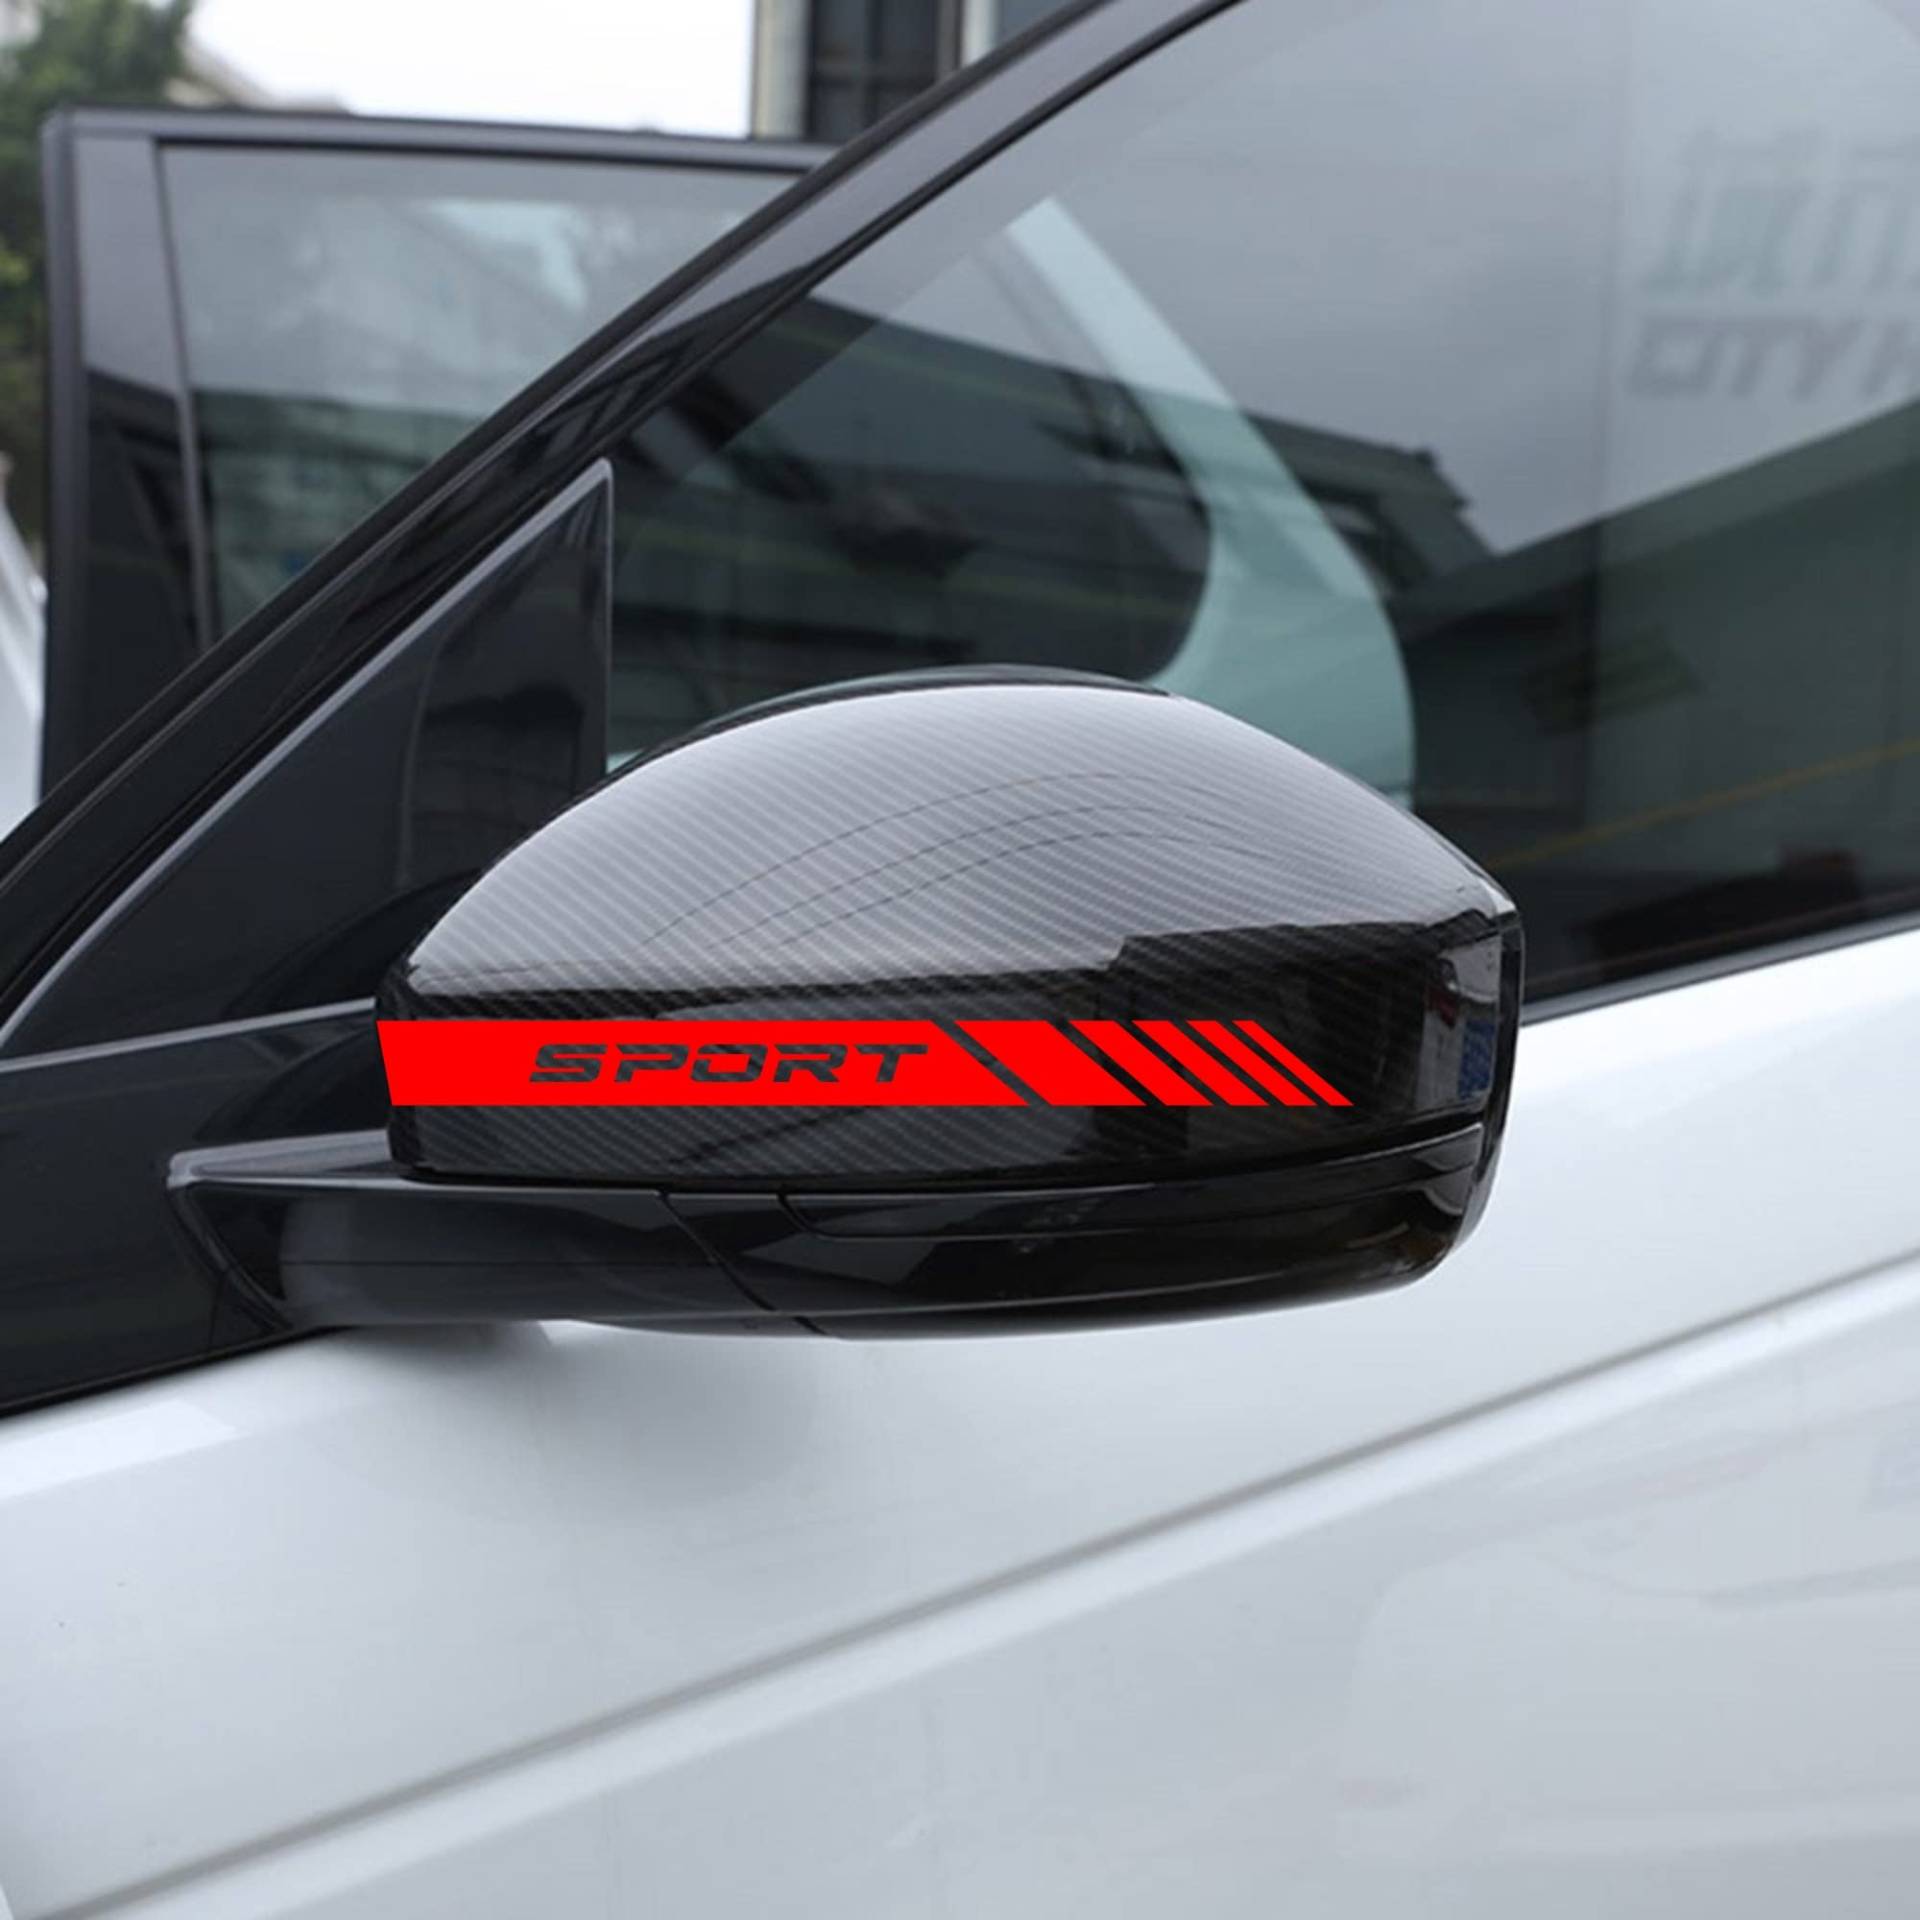 AUTODOMY Rückspiegel Aufkleber Stickers Auto mit Streifen Design Stripes Tuning Packet mit 6 Einheiten mit unterschiedlichen Breiten Sportdesign für das Auto (Rot) von AUTODOMY